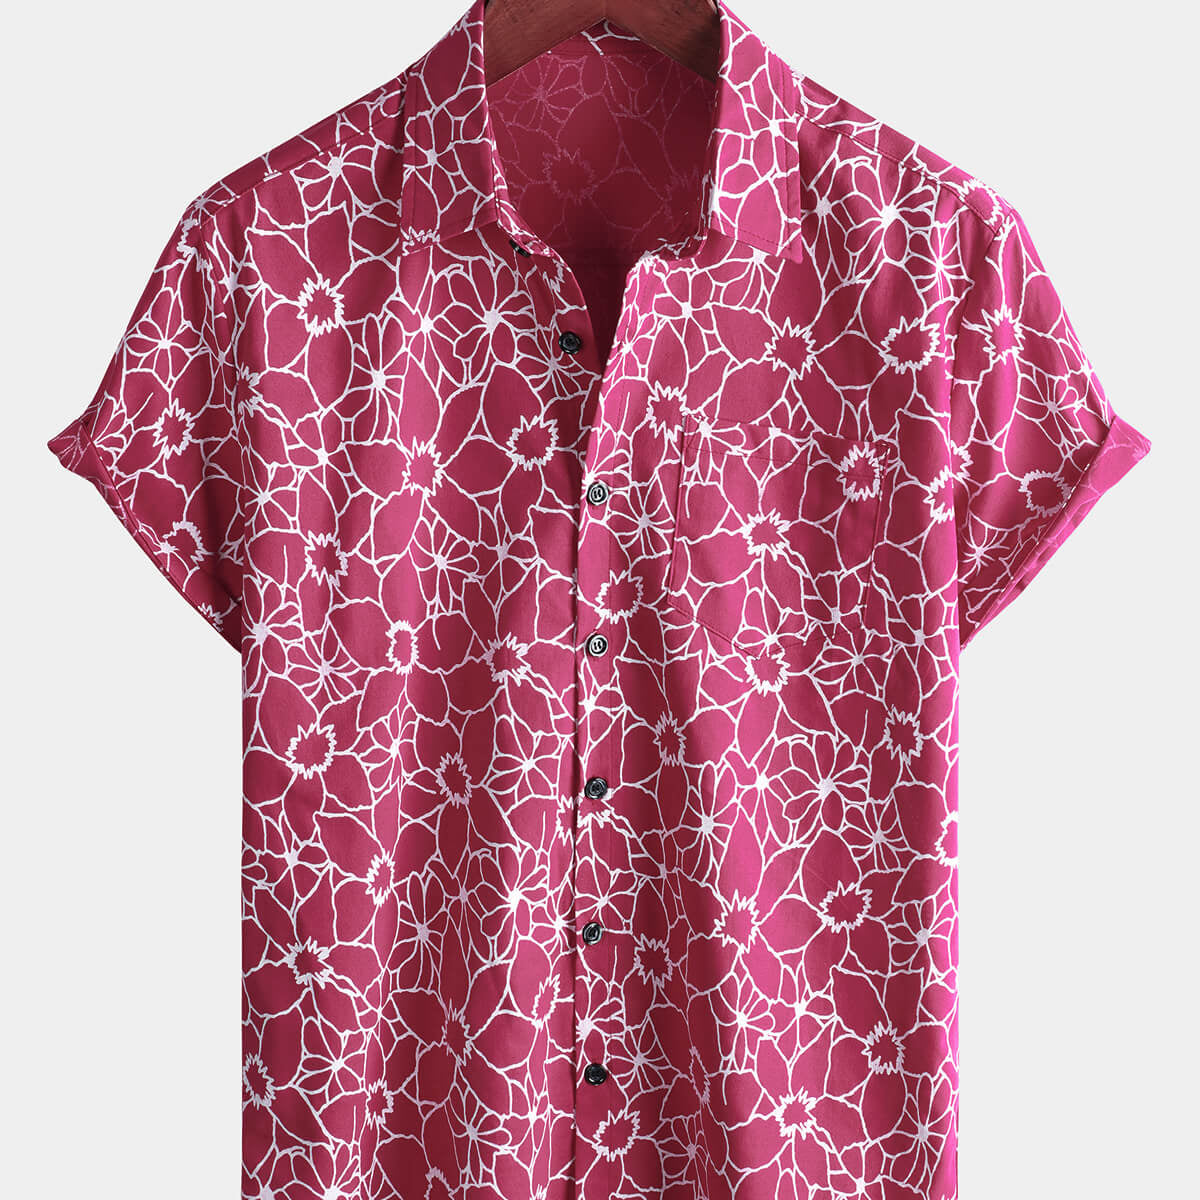 Men's Floral Pink Hawaiian Cotton Short Sleeve Shirt